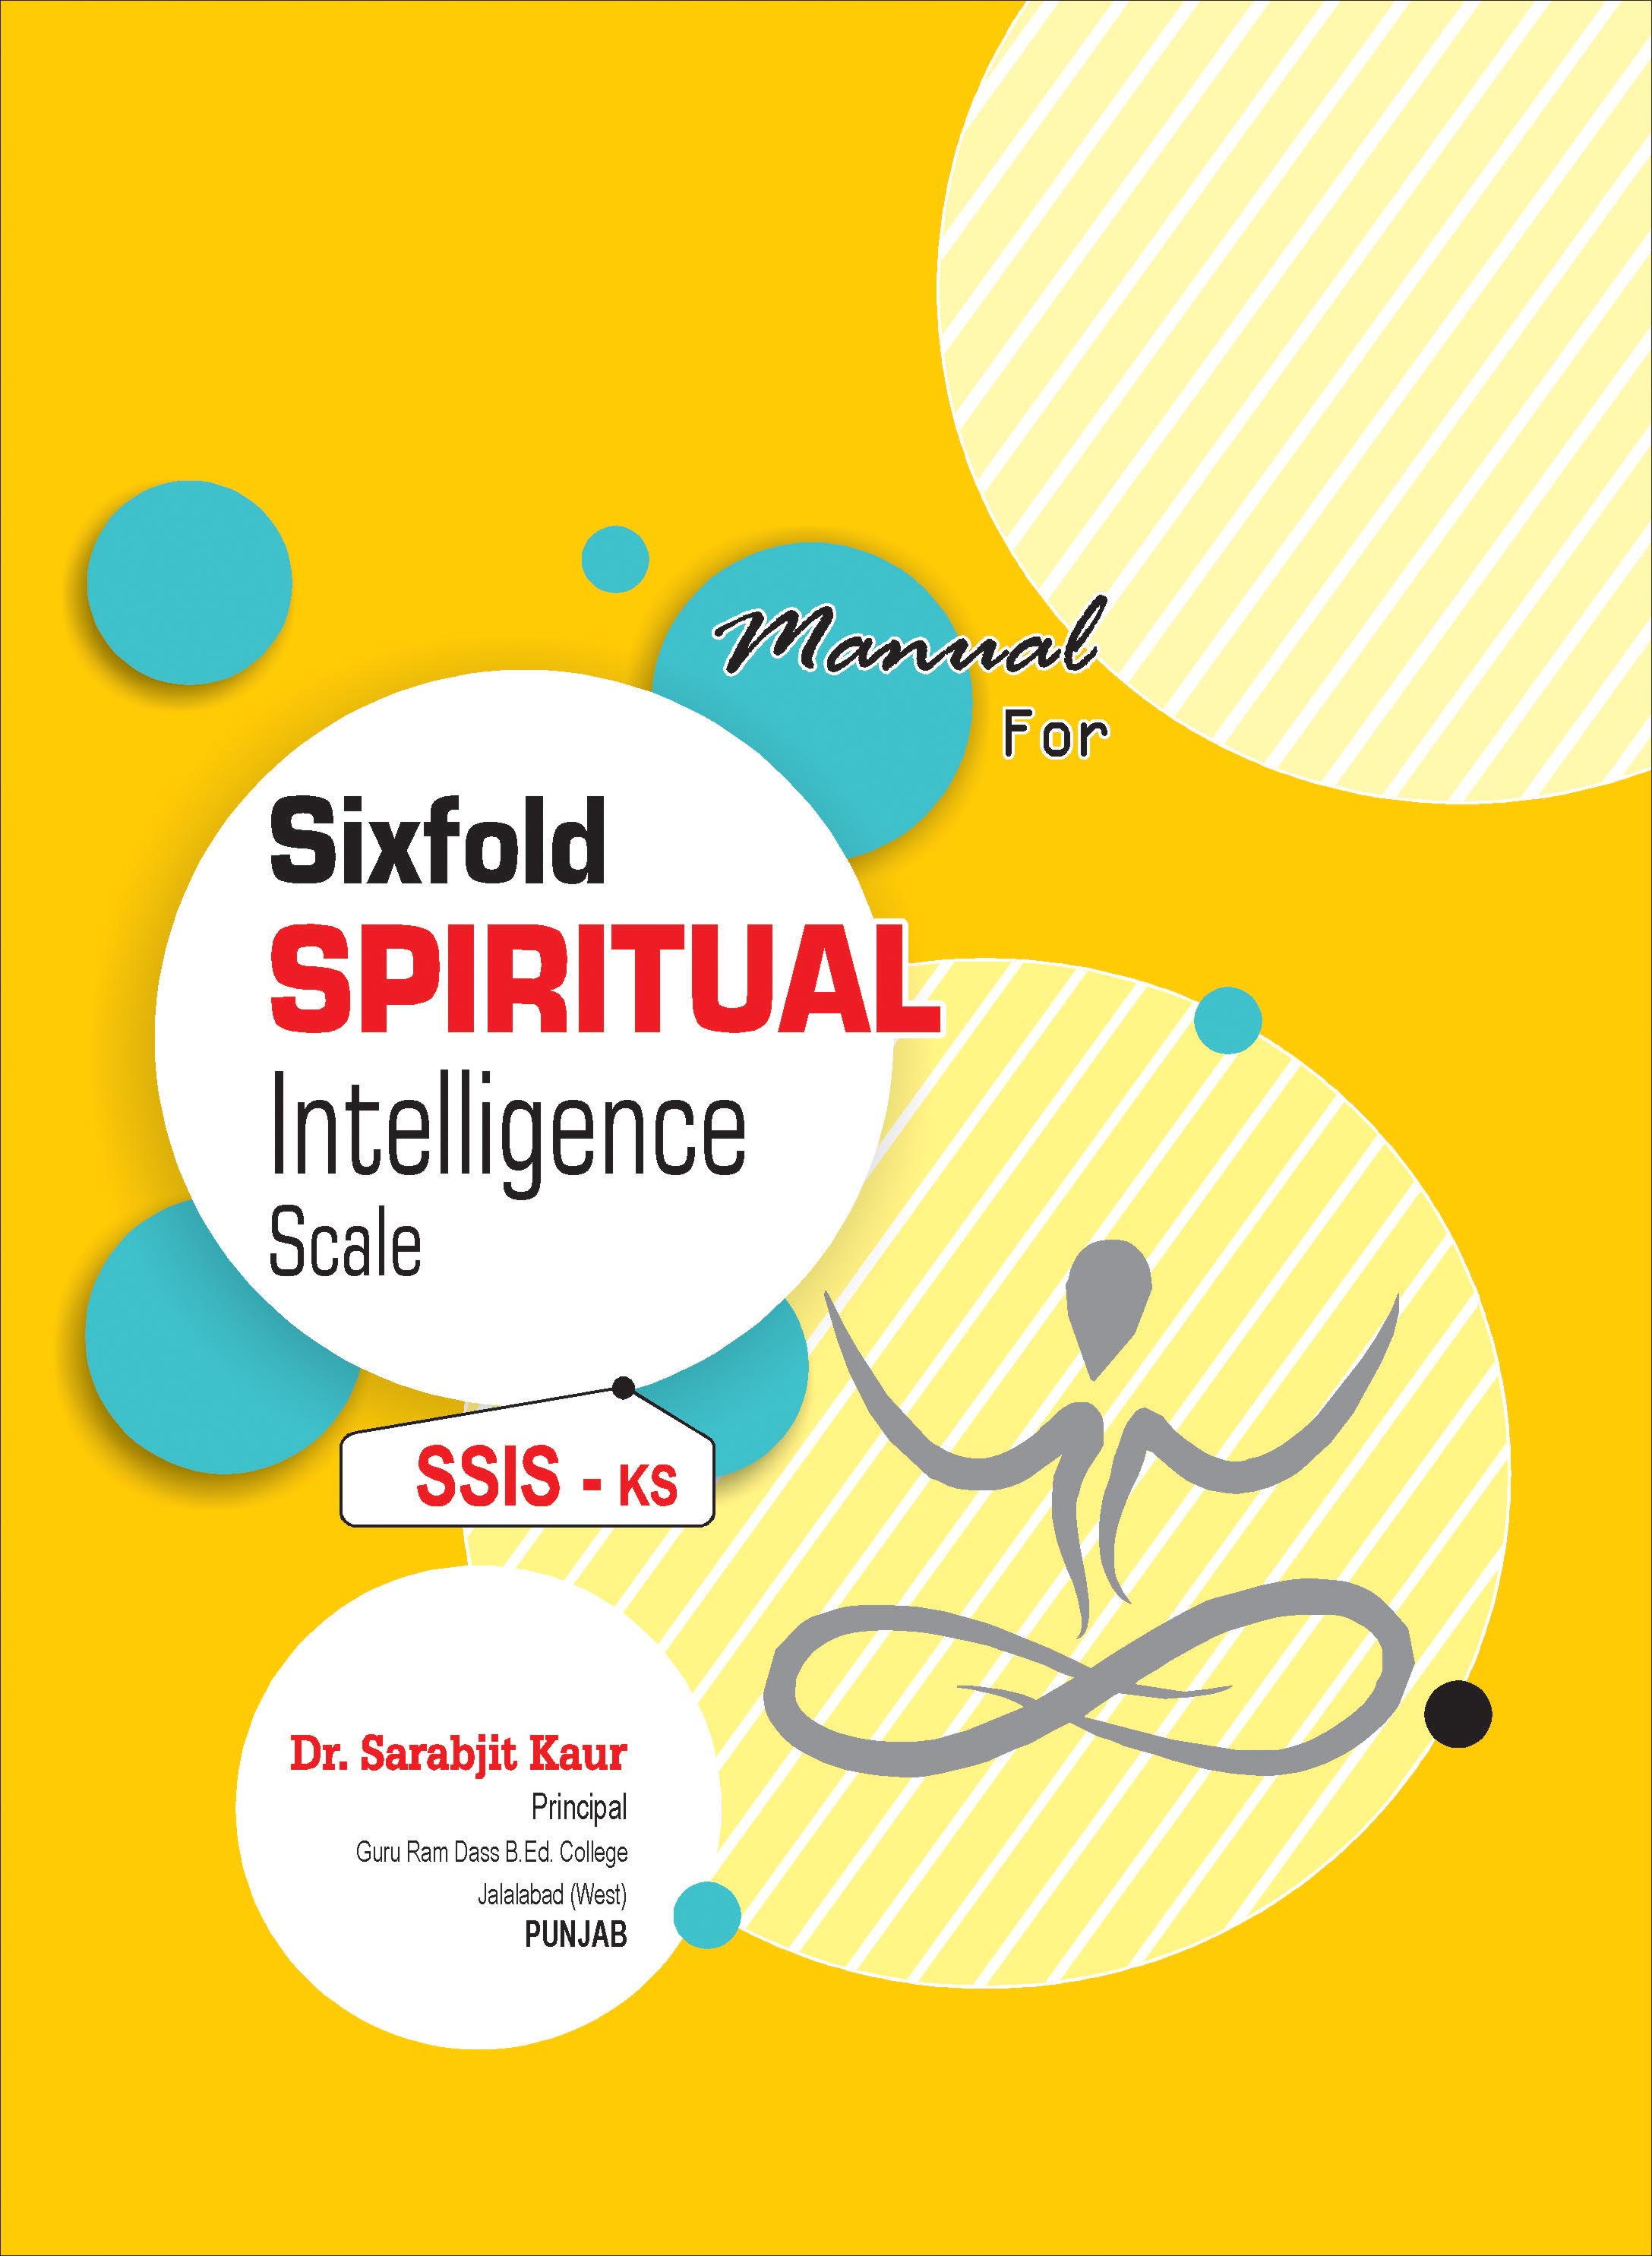 SIXFOLD-SPIRITUAL-INTELLIGENCE-SCALE